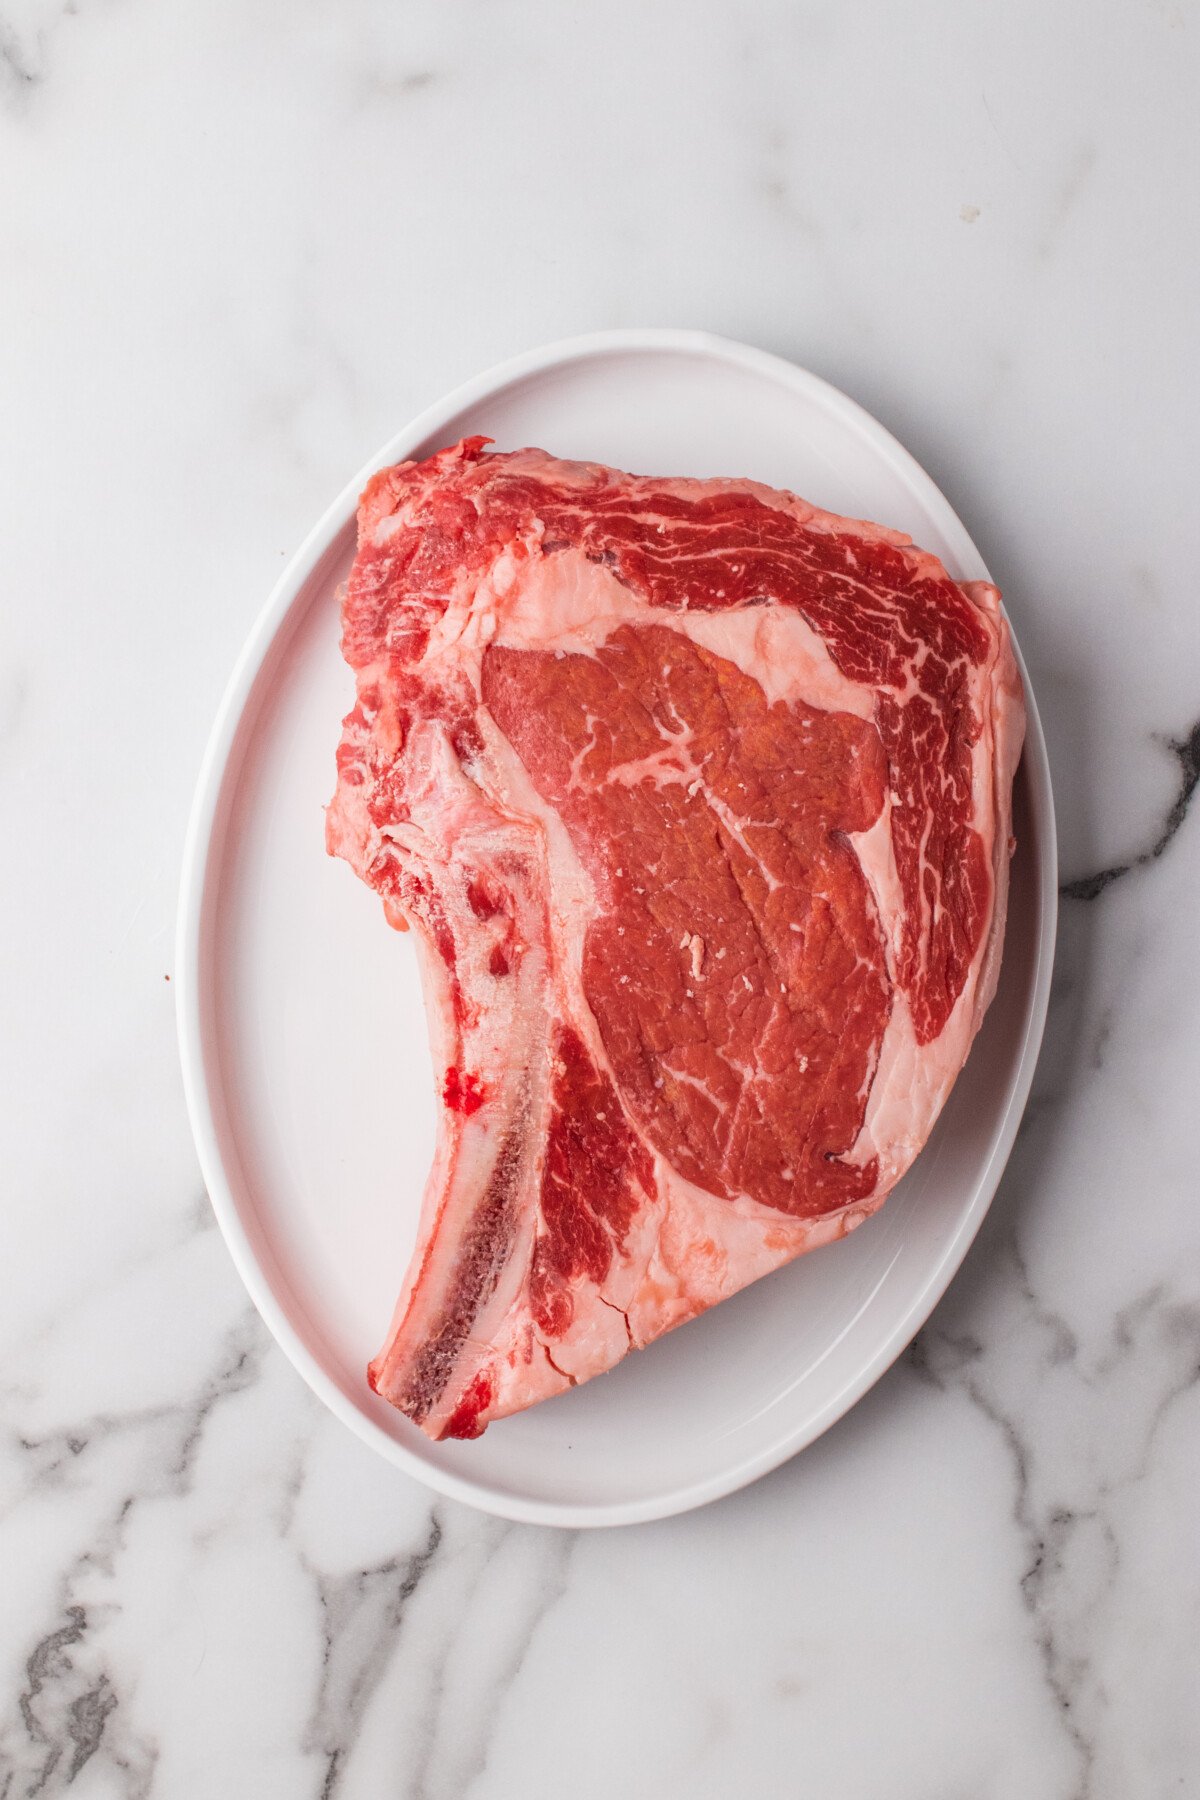 Bone-in ribeye steak on a platter. 